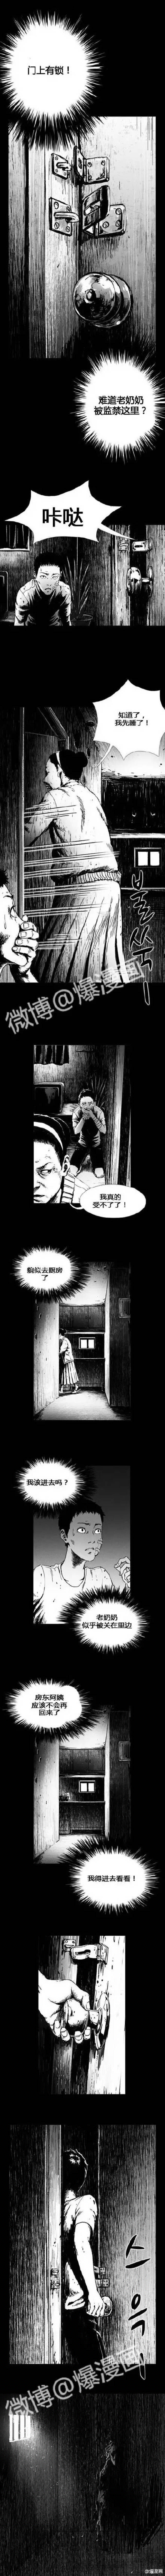 韩国漫画新作《虫洞》-黑白漫话